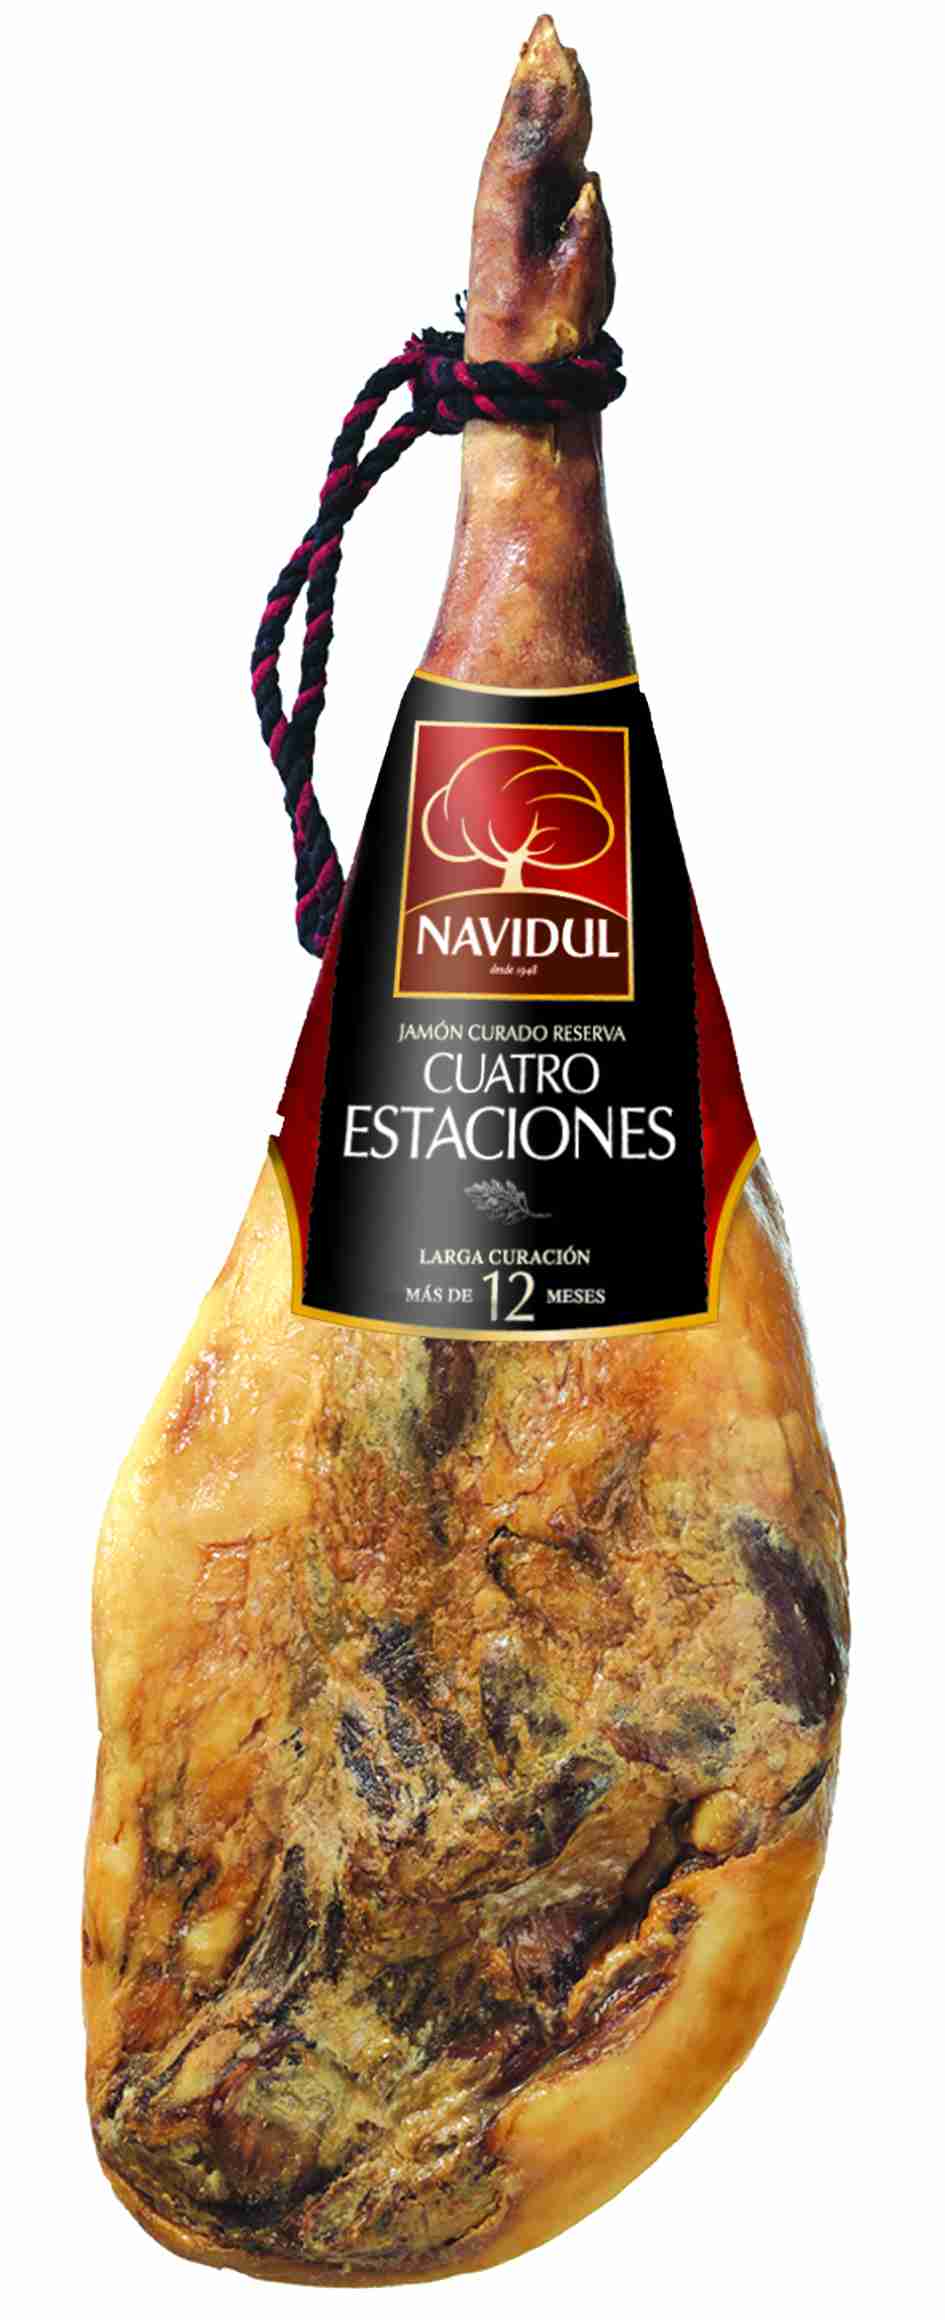 Prosciutto crudo spagnolo jamon serrano iberico dolce box con morsa  coltello 5kg